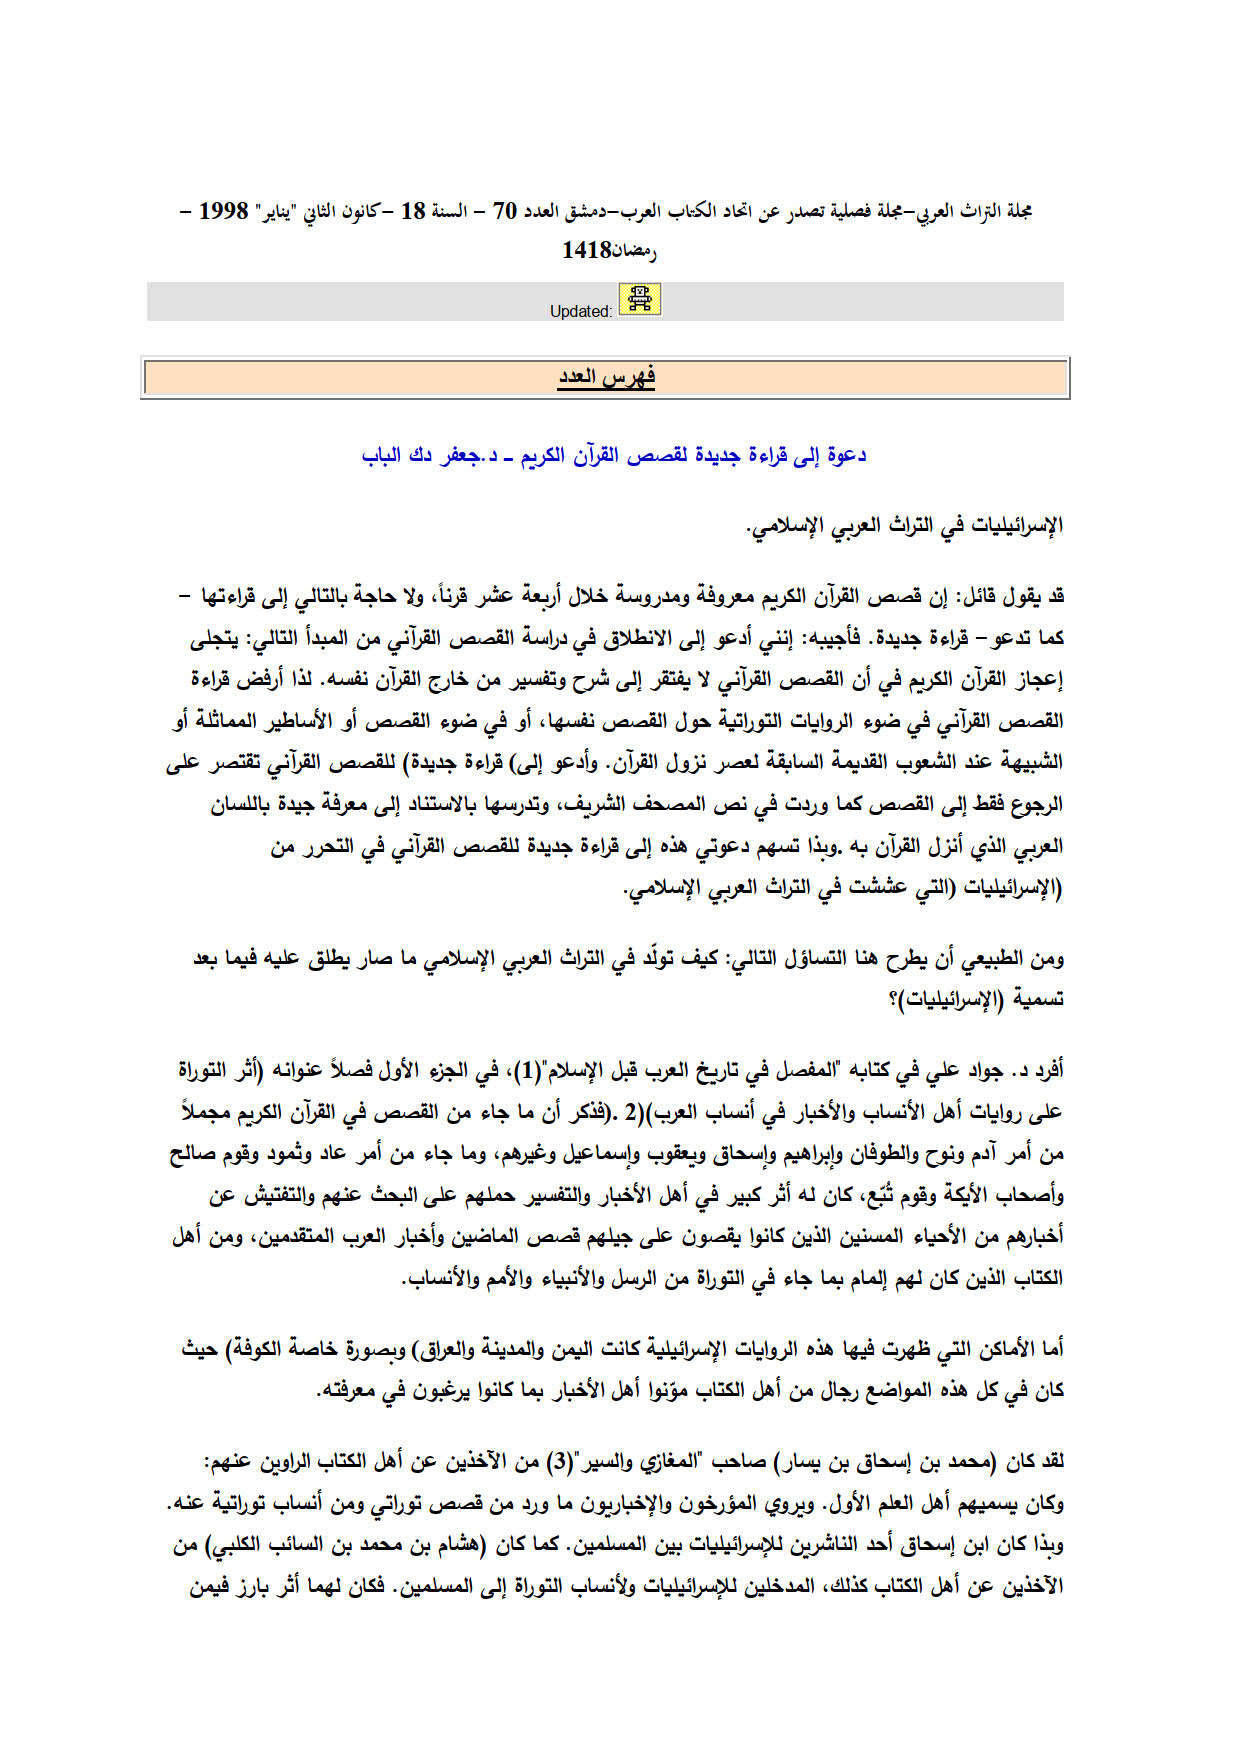 دعوة إلى قراءة جديدة لقصص القرآن الكريم _ مقالة في مجلة التراث العربي